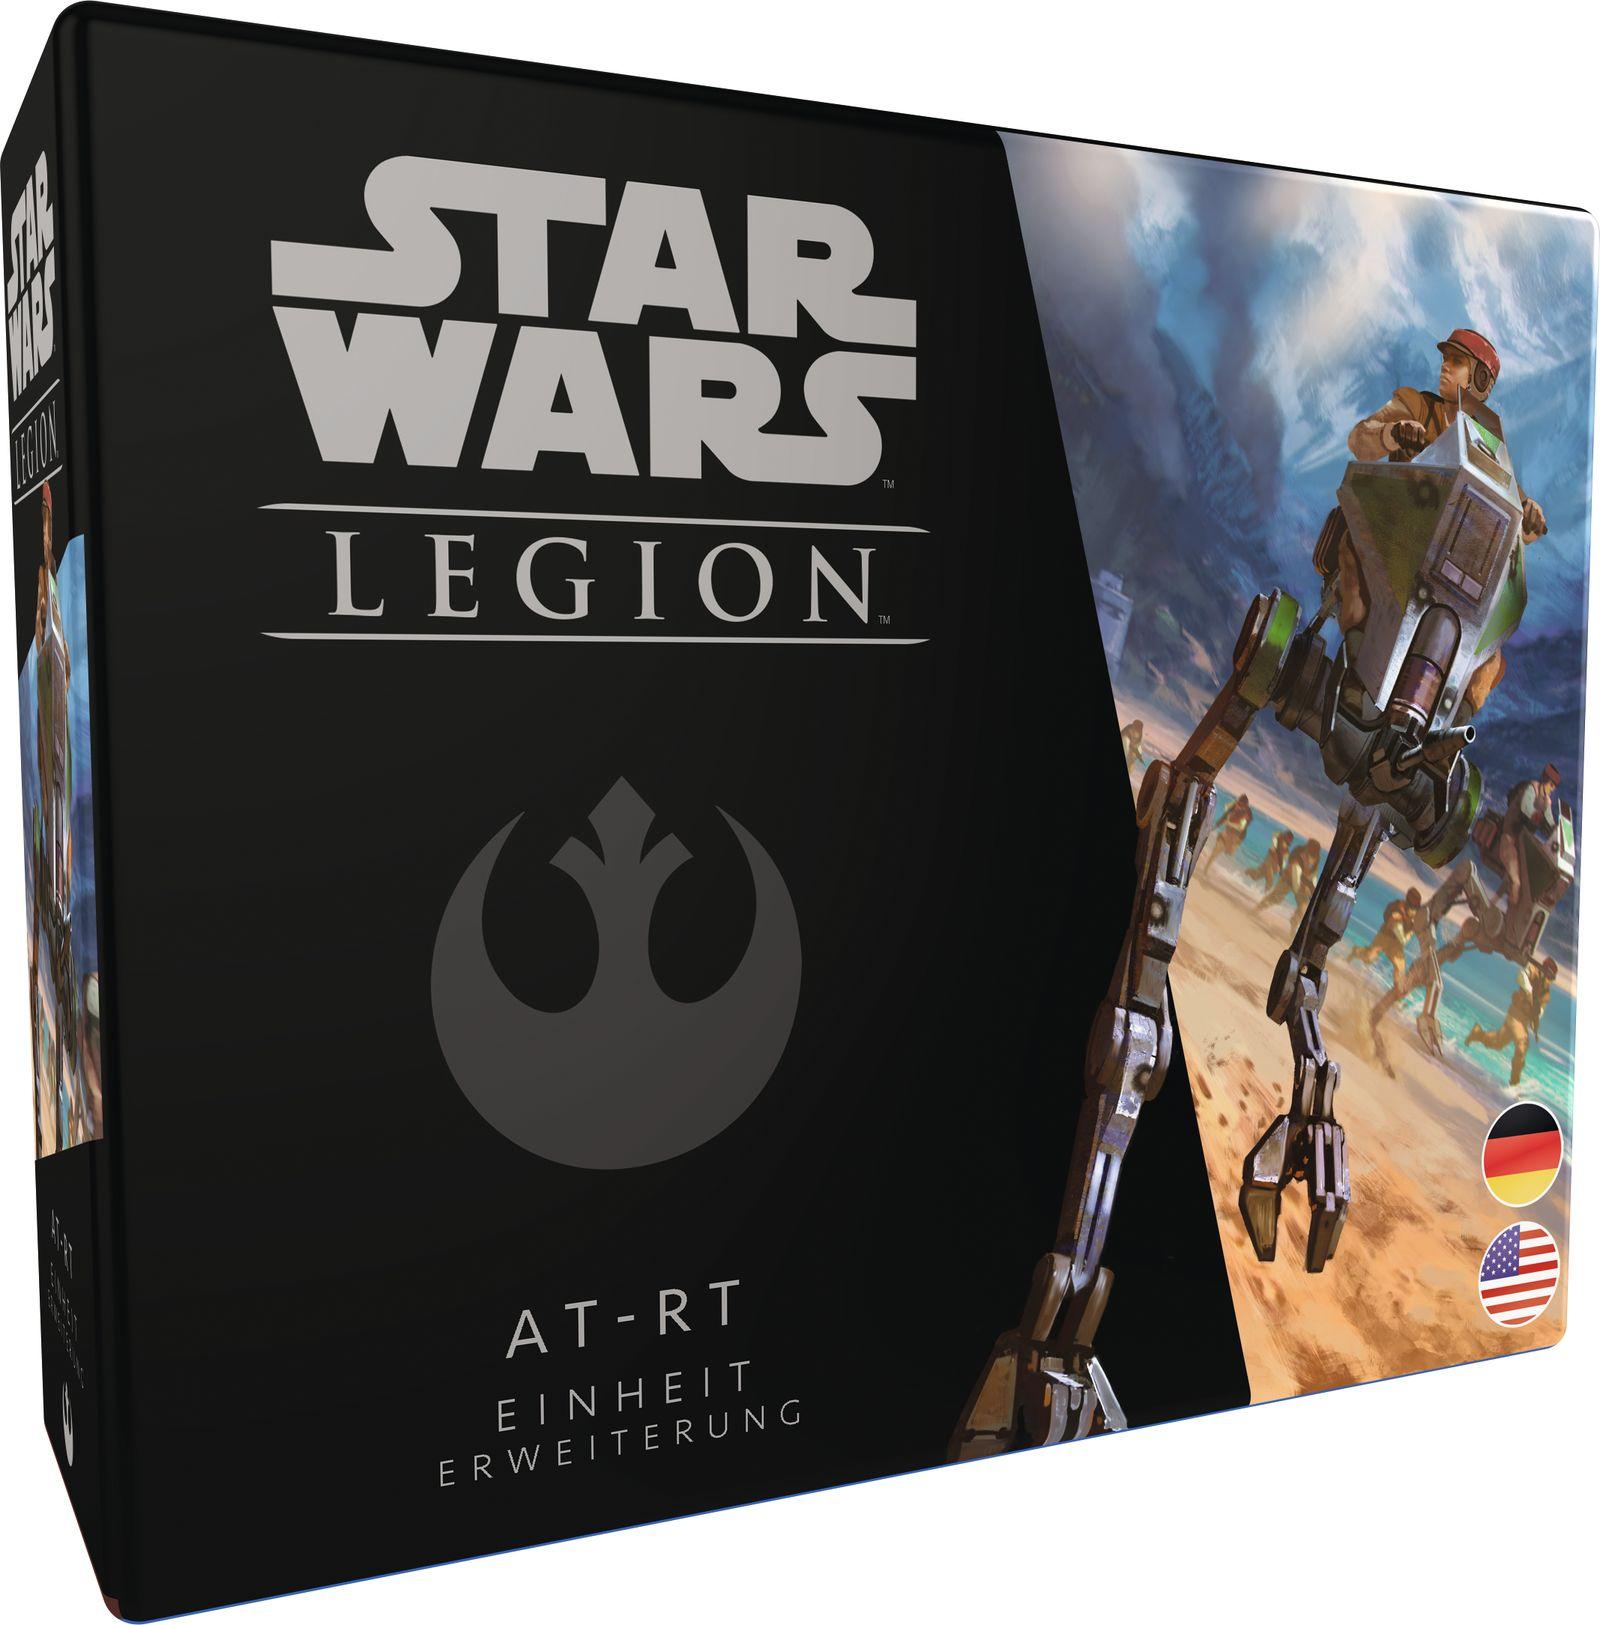 Star Wars: Legion - AT-RT - Einheit-Erweiterung